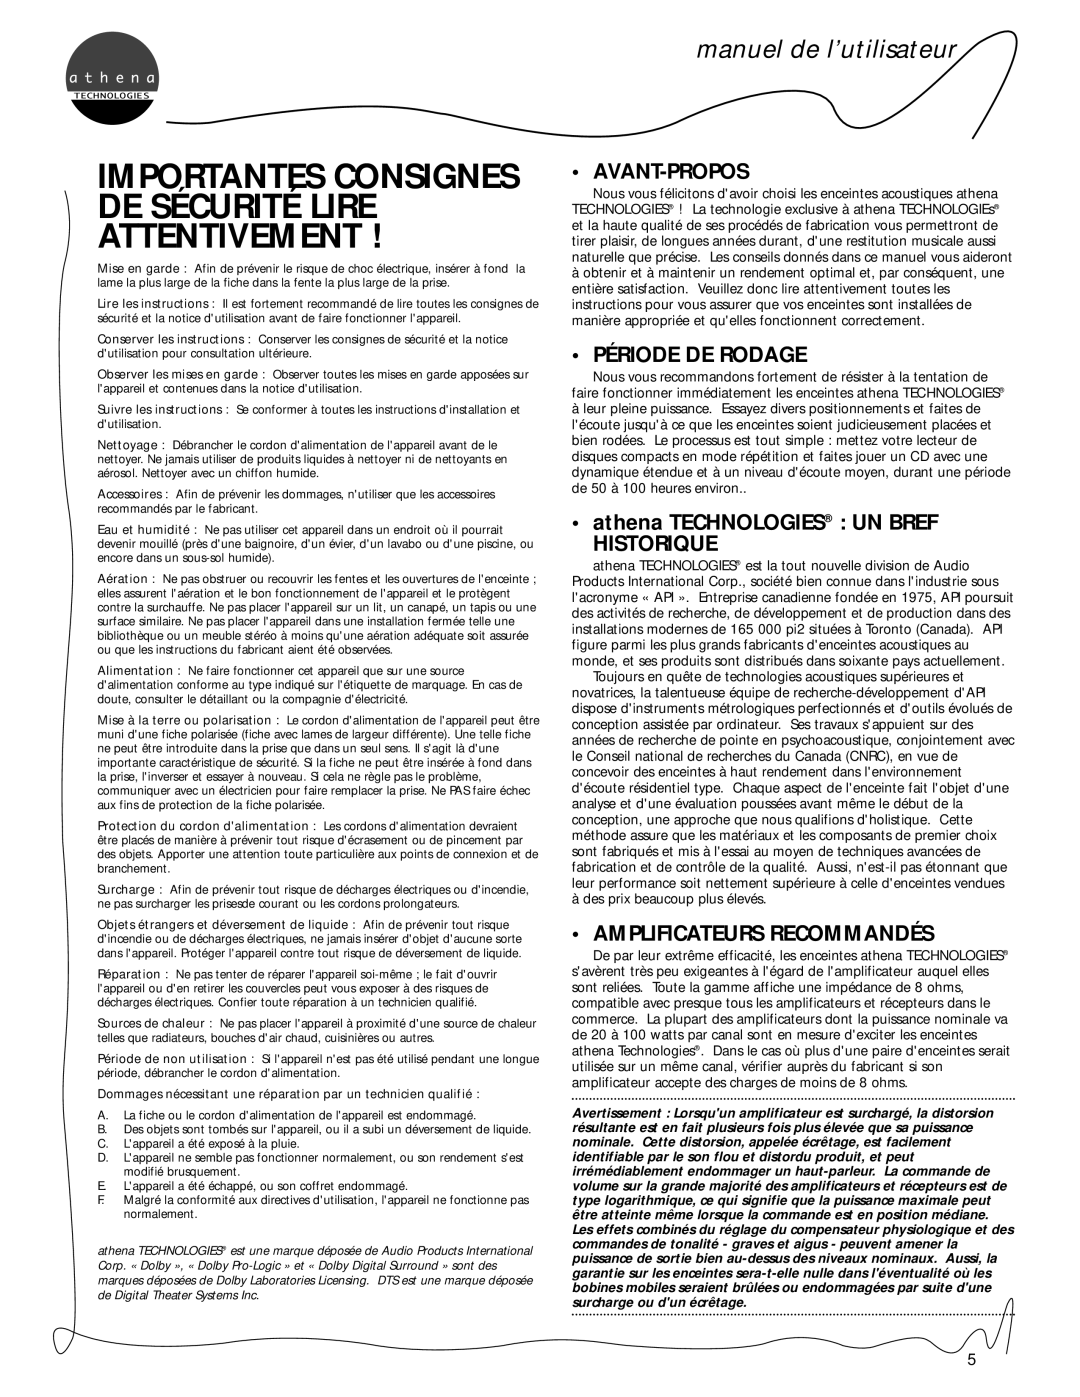 Athena Technologies S.5 manuel de l’utilisateur, Avant-Propos, Période De Rodage, athena TECHNOLOGIES UN BREF HISTORIQUE 